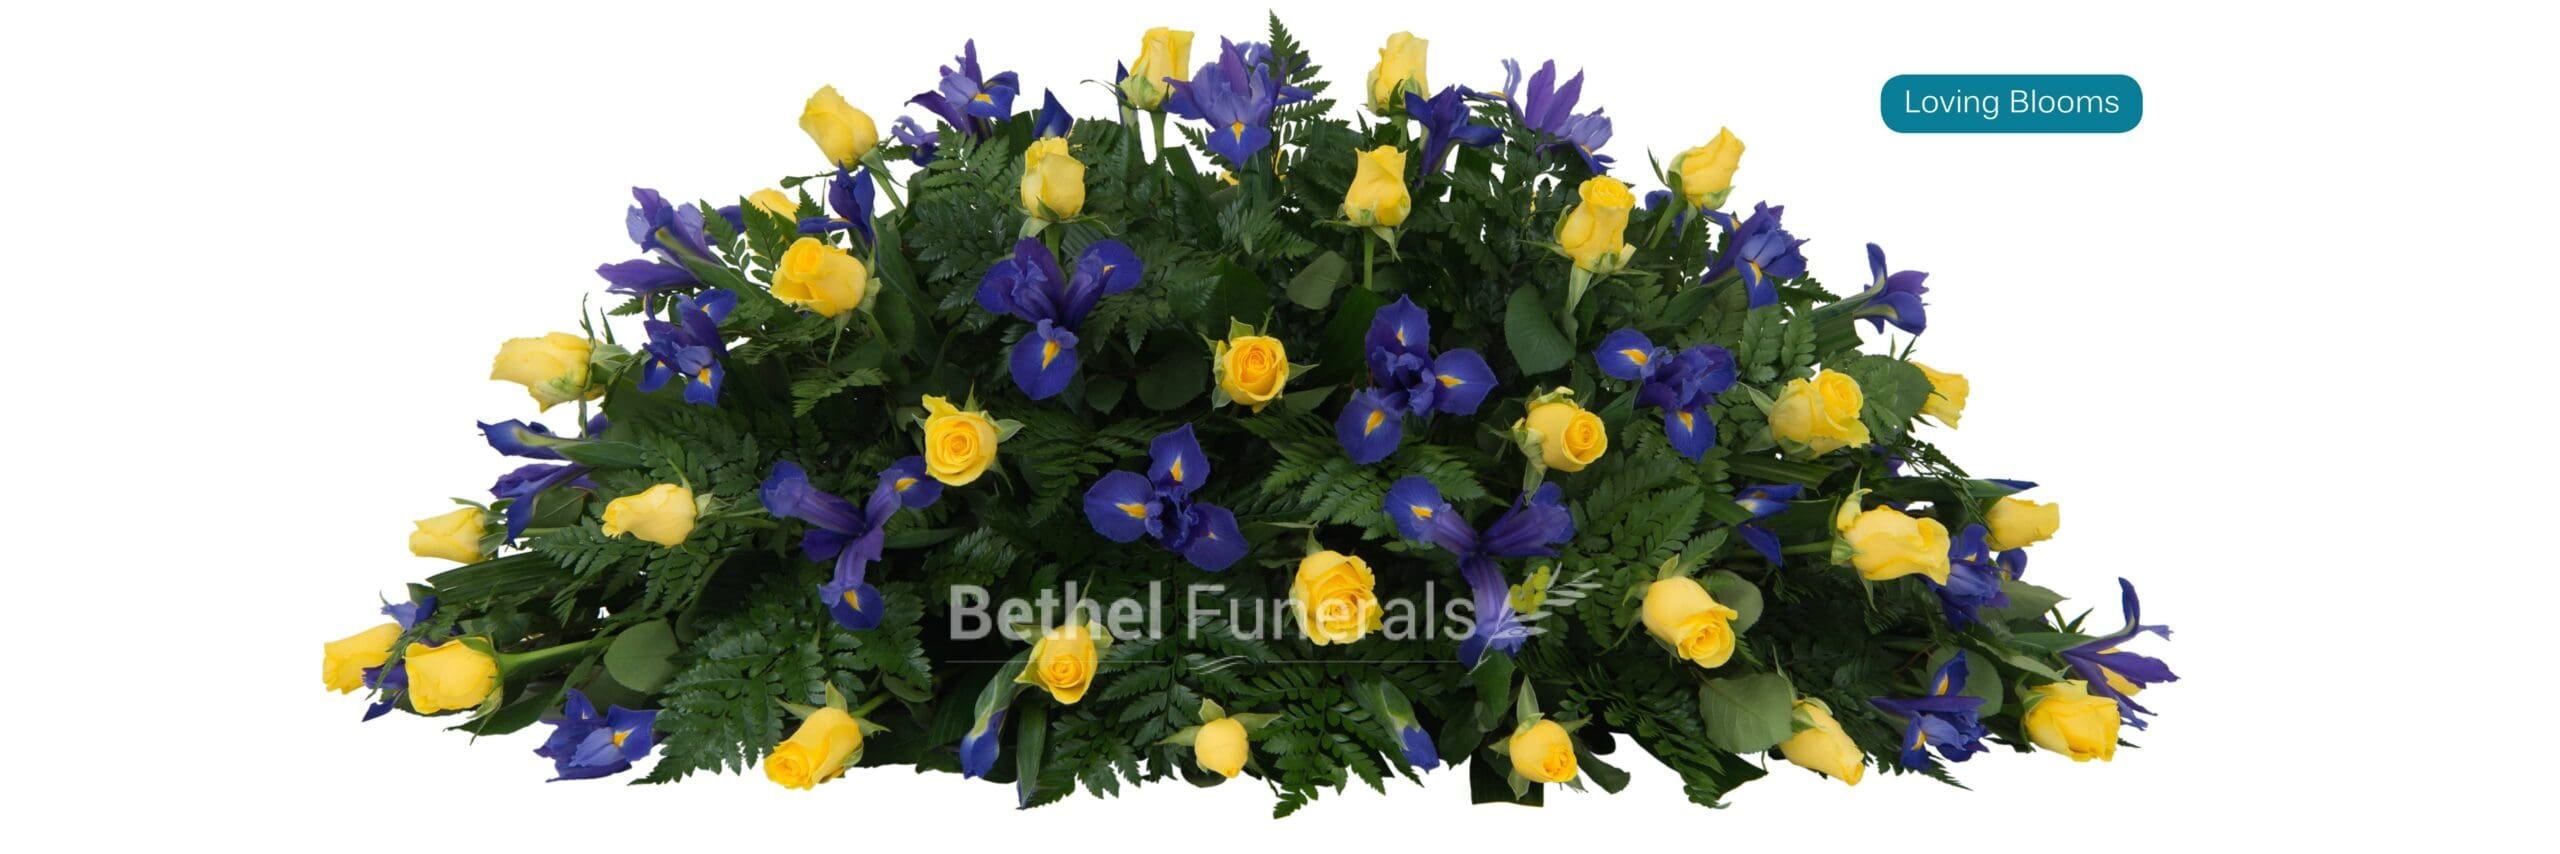 Loving blooms funeral flowers